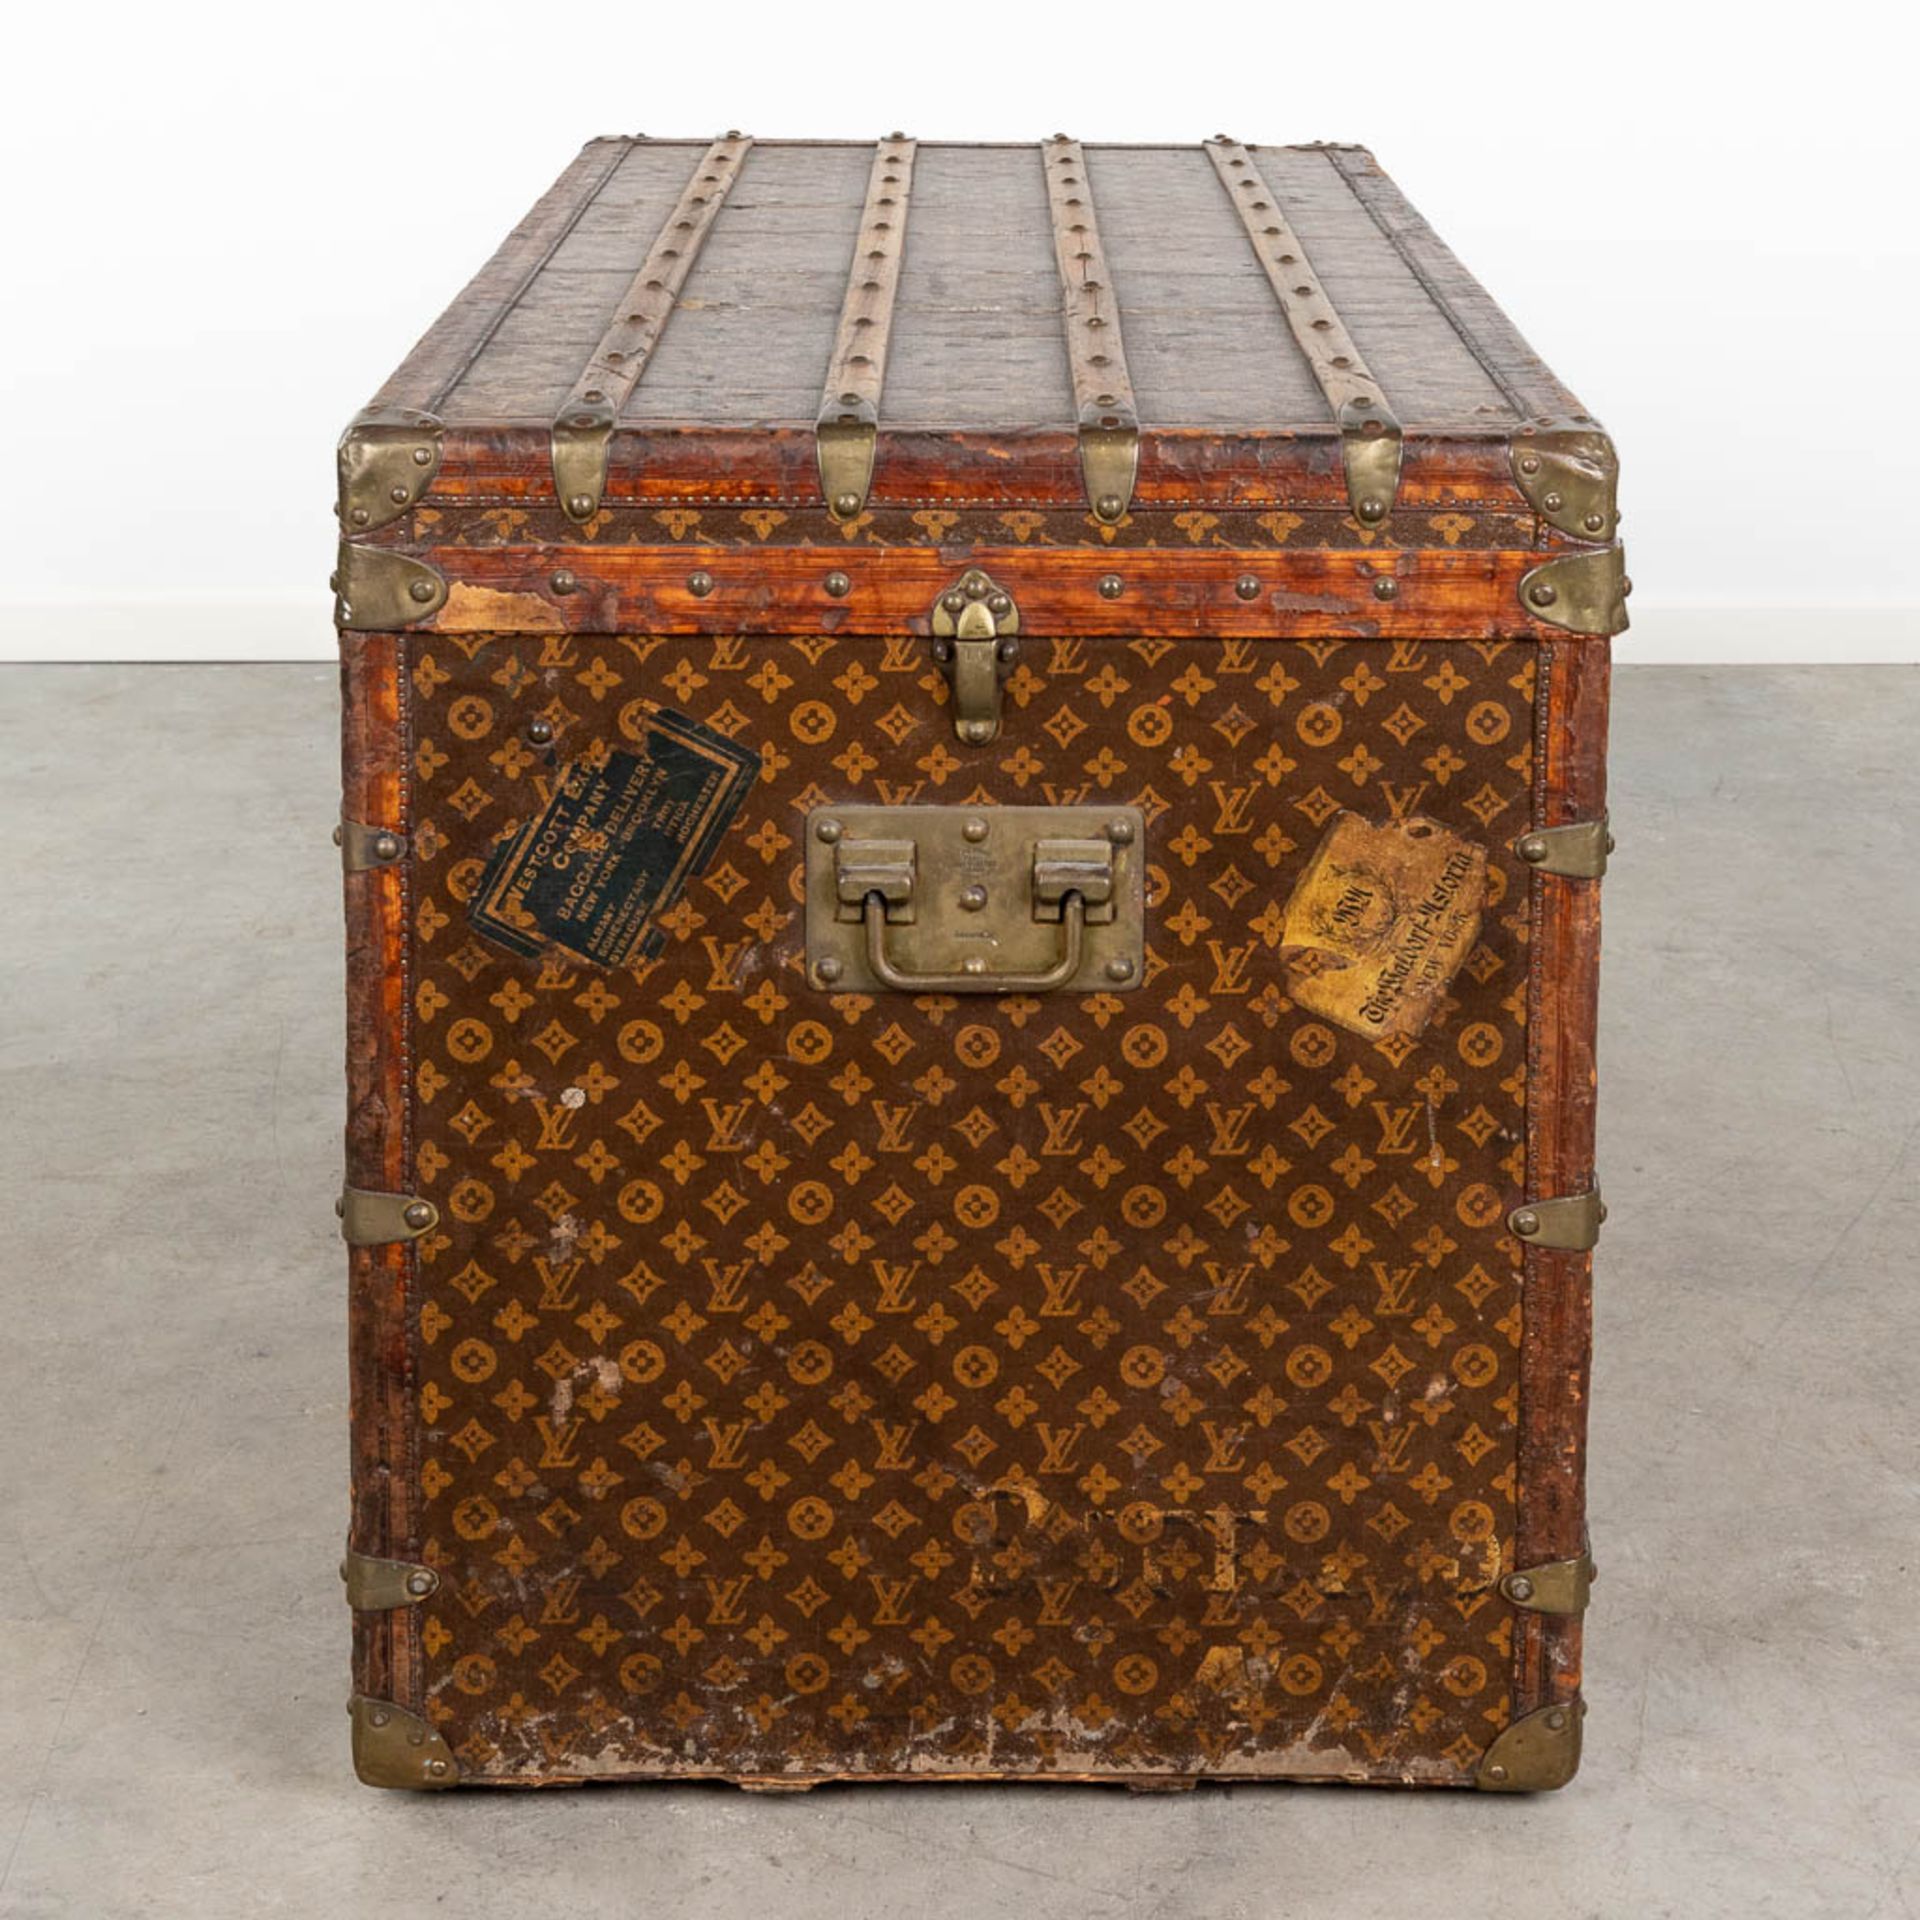 Louis Vuitton, a large and antique suitcase. (L:63 x W:113 x H:72 cm) - Bild 5 aus 25